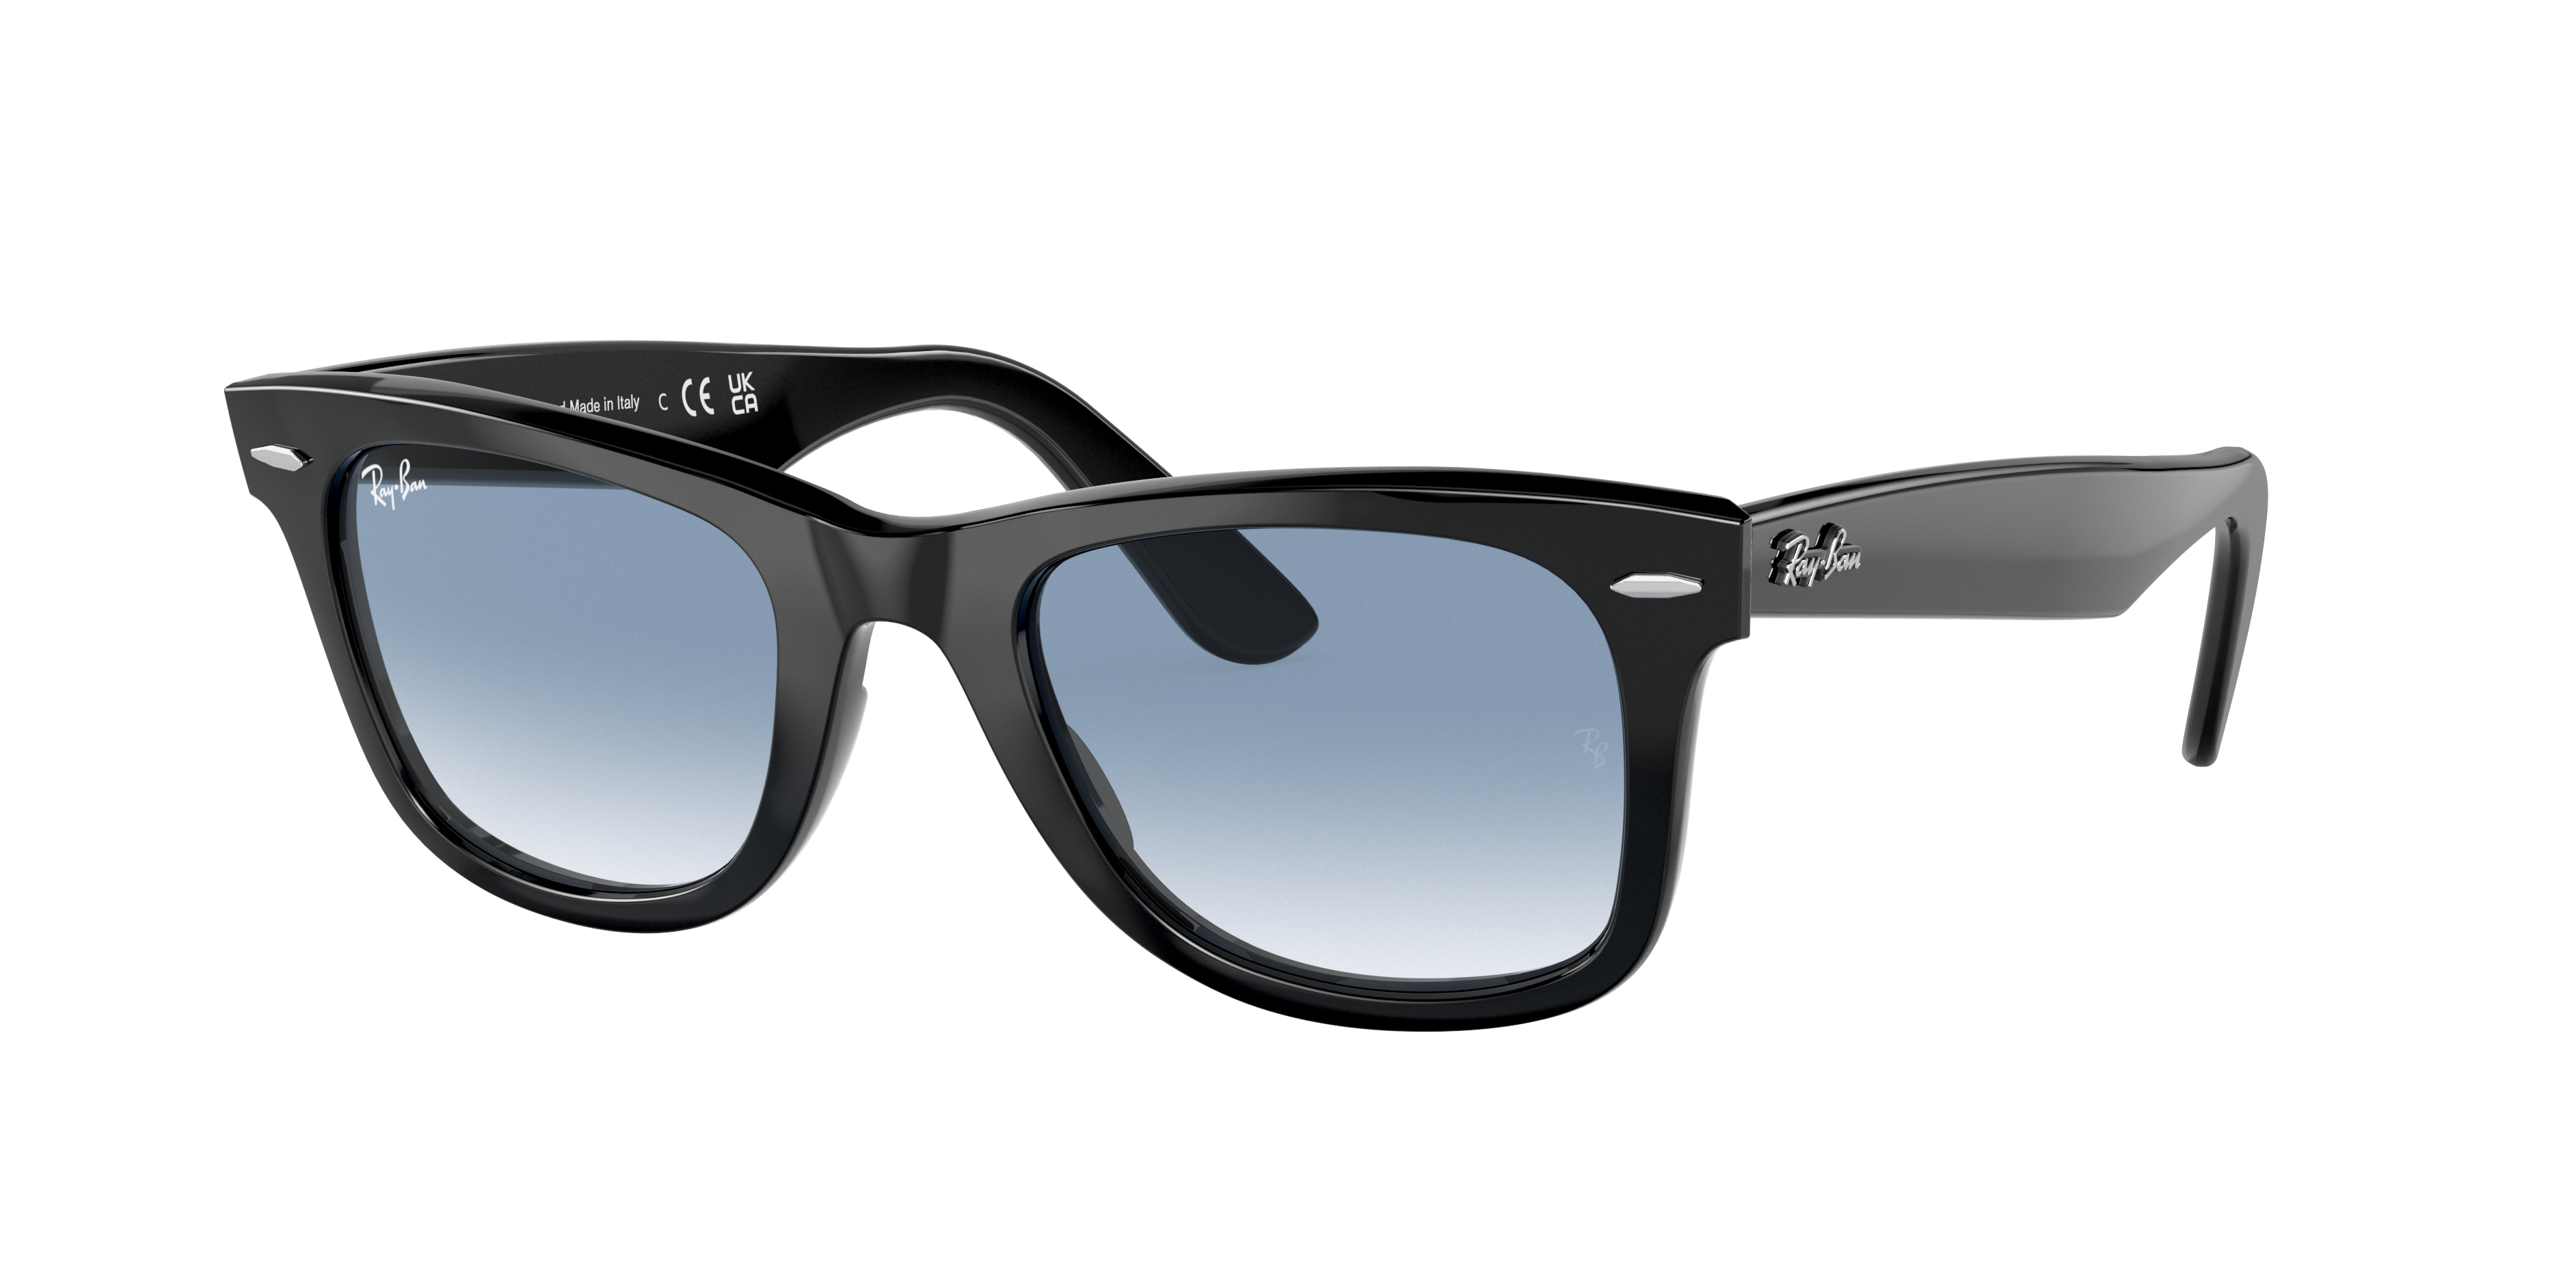 Extreem belangrijk vriendelijke groet Snel Original Wayfarer Classic Sunglasses in Black and Blue | Ray-Ban®